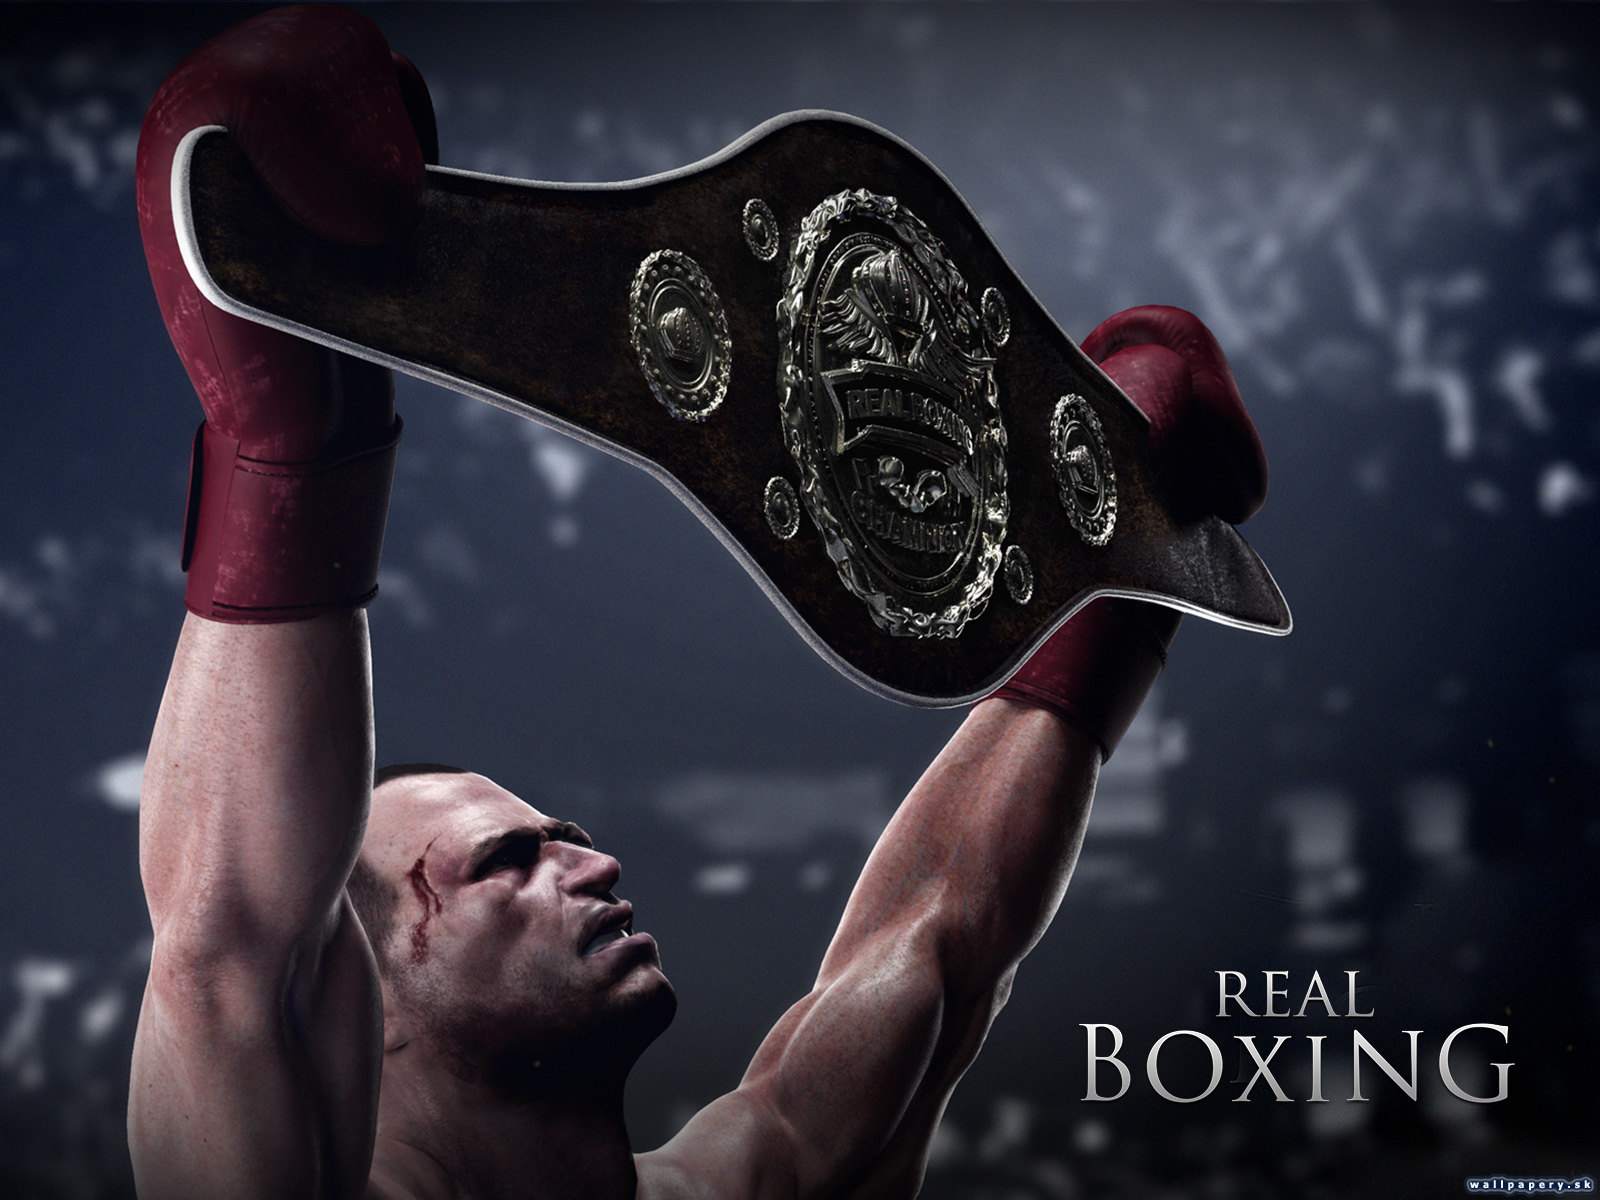 Real Boxing - wallpaper 4